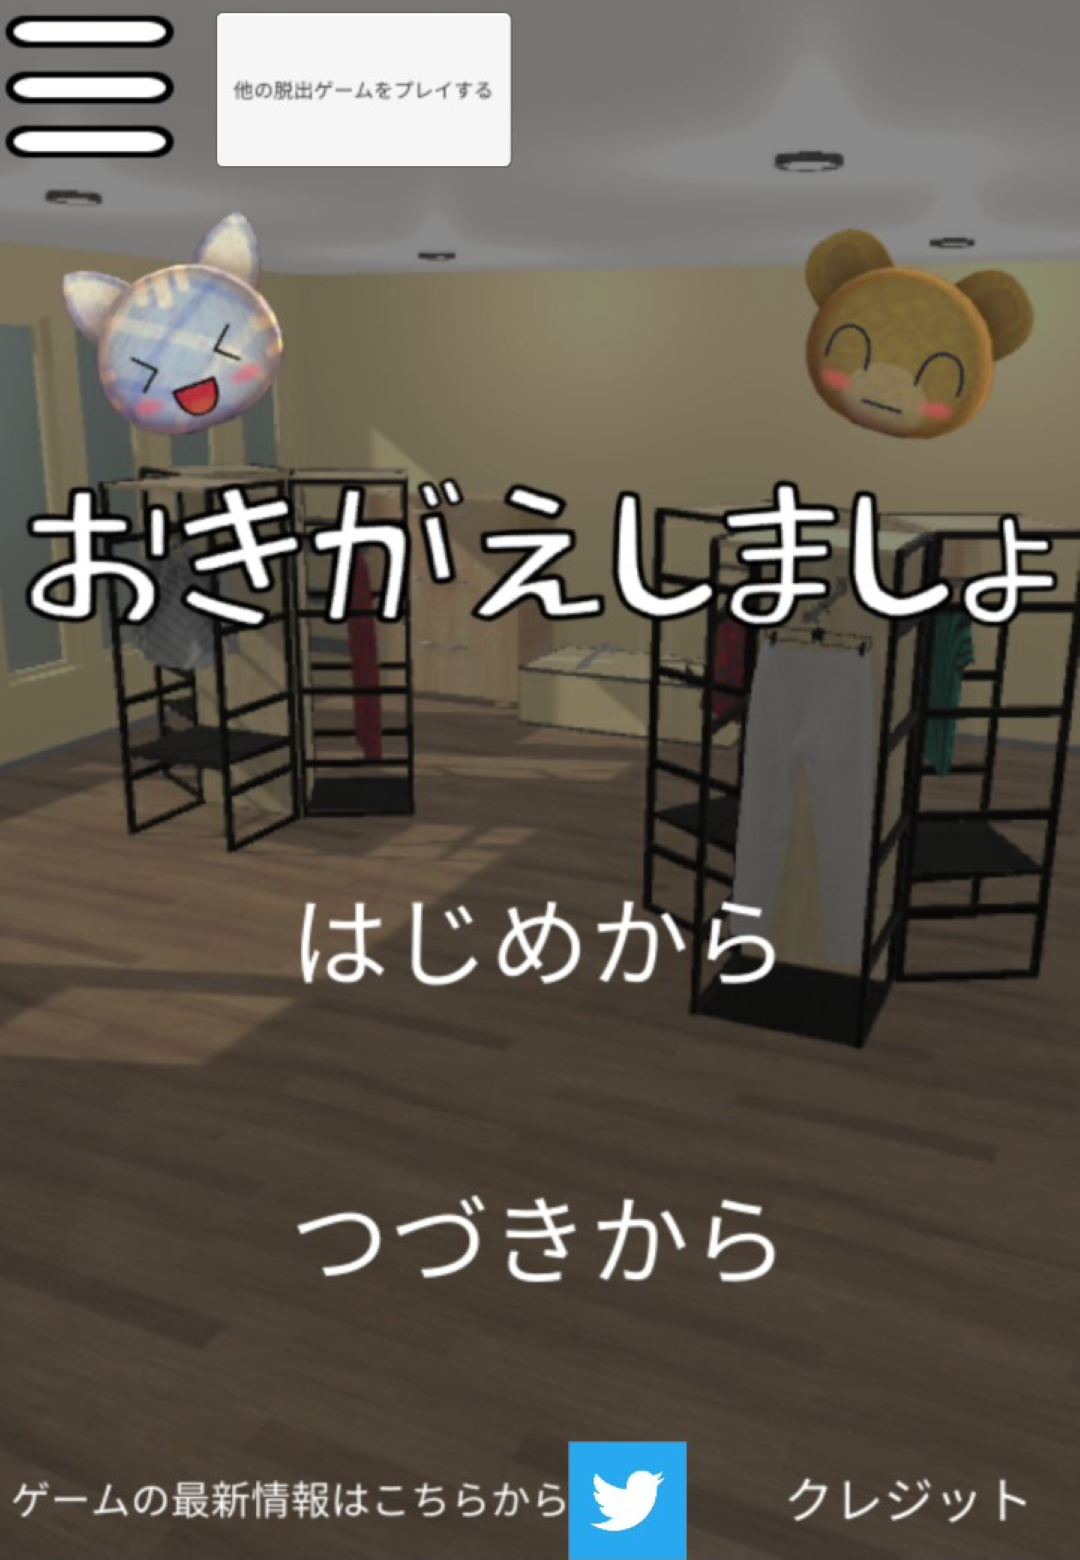 Screenshot 1 of Trò chơi trốn thoát: thay quần áo 1.1.1a